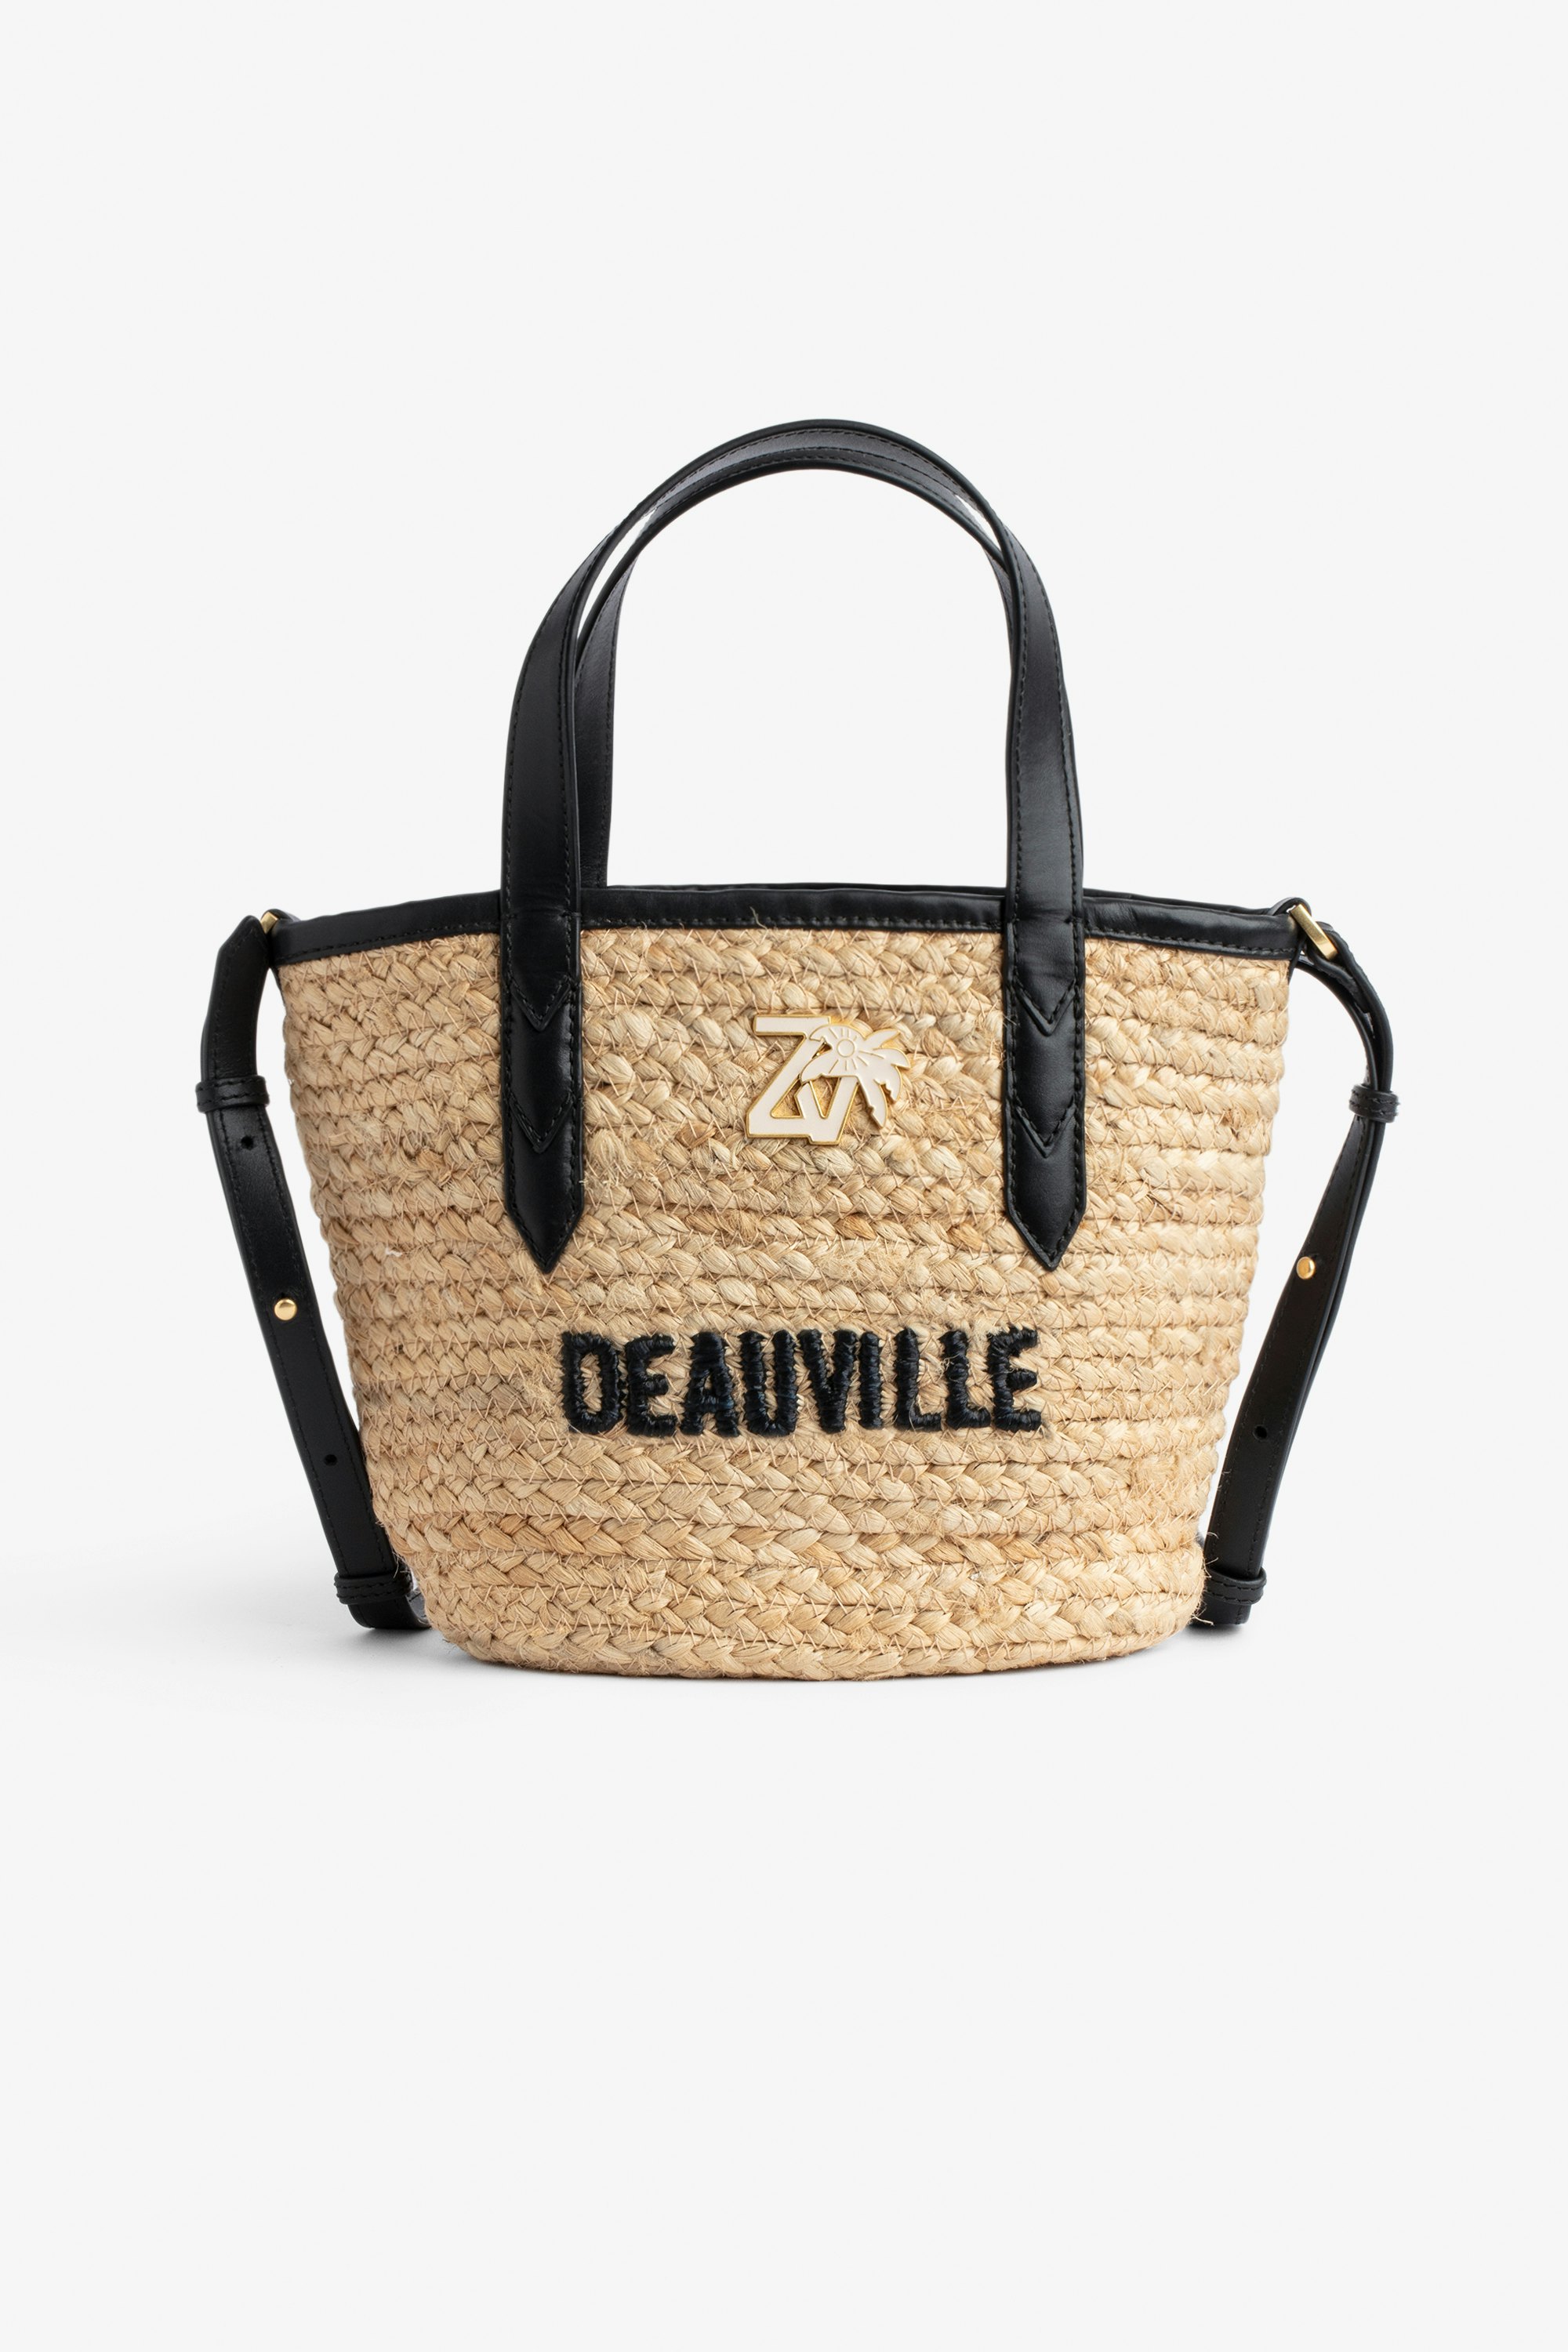 Borsa Le Baby Beach Bag Borsa in paglia con tracolla in pelle nera, con ricamo "Deauville" e impreziosita da un charm ZV - Donna